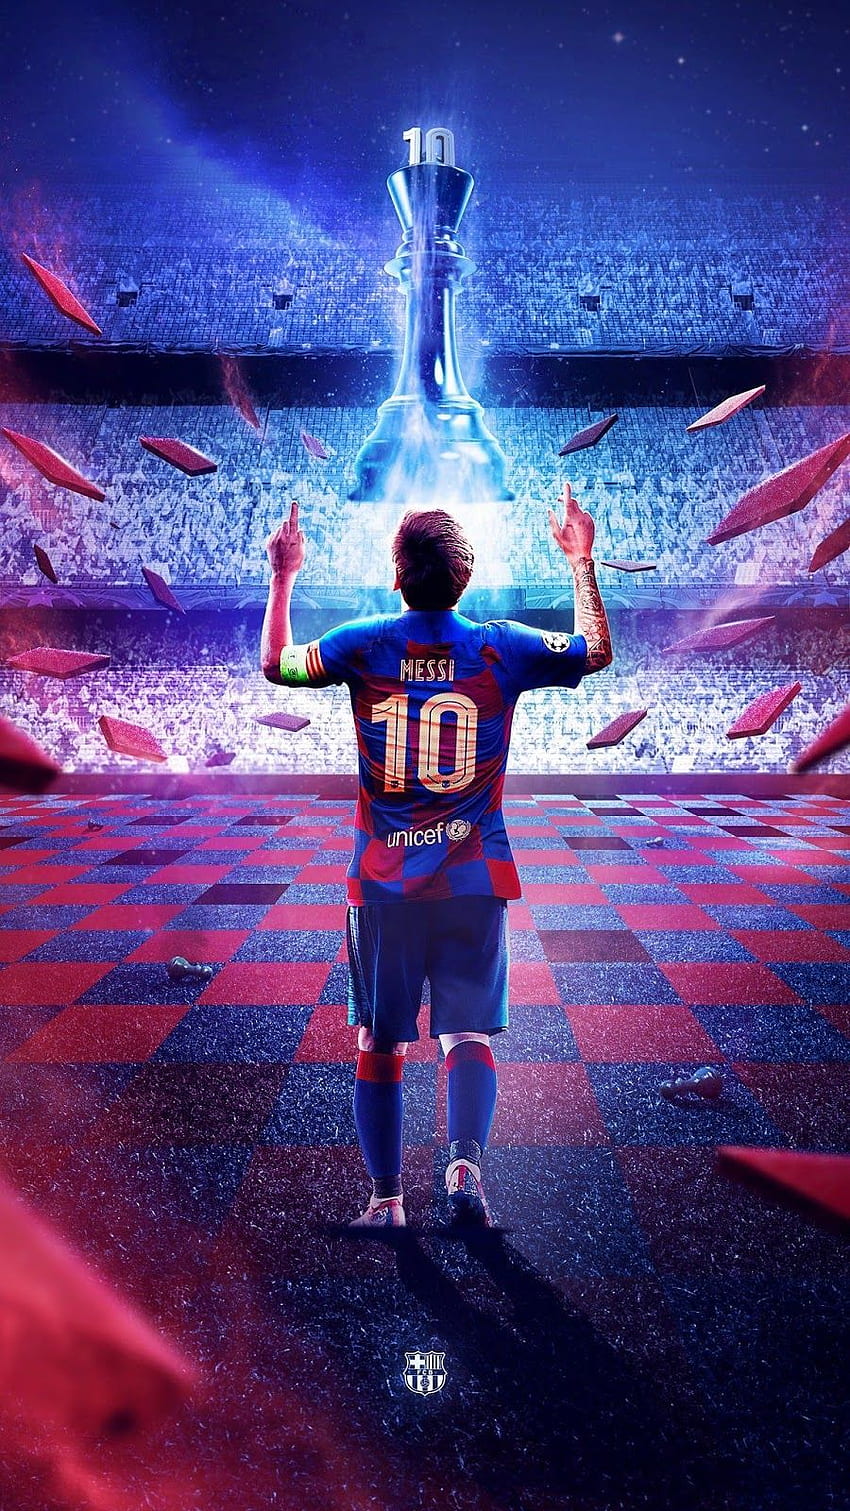 Hãy cập nhật chiếc điện thoại của bạn với hình nền Messi 2020 mới nhất! Bạn sẽ không thể rời mắt khỏi chất lượng hình ảnh tuyệt đẹp và sắc nét của bức ảnh. Messi sẽ là điểm nhấn hoàn hảo cho màn hình của bạn.